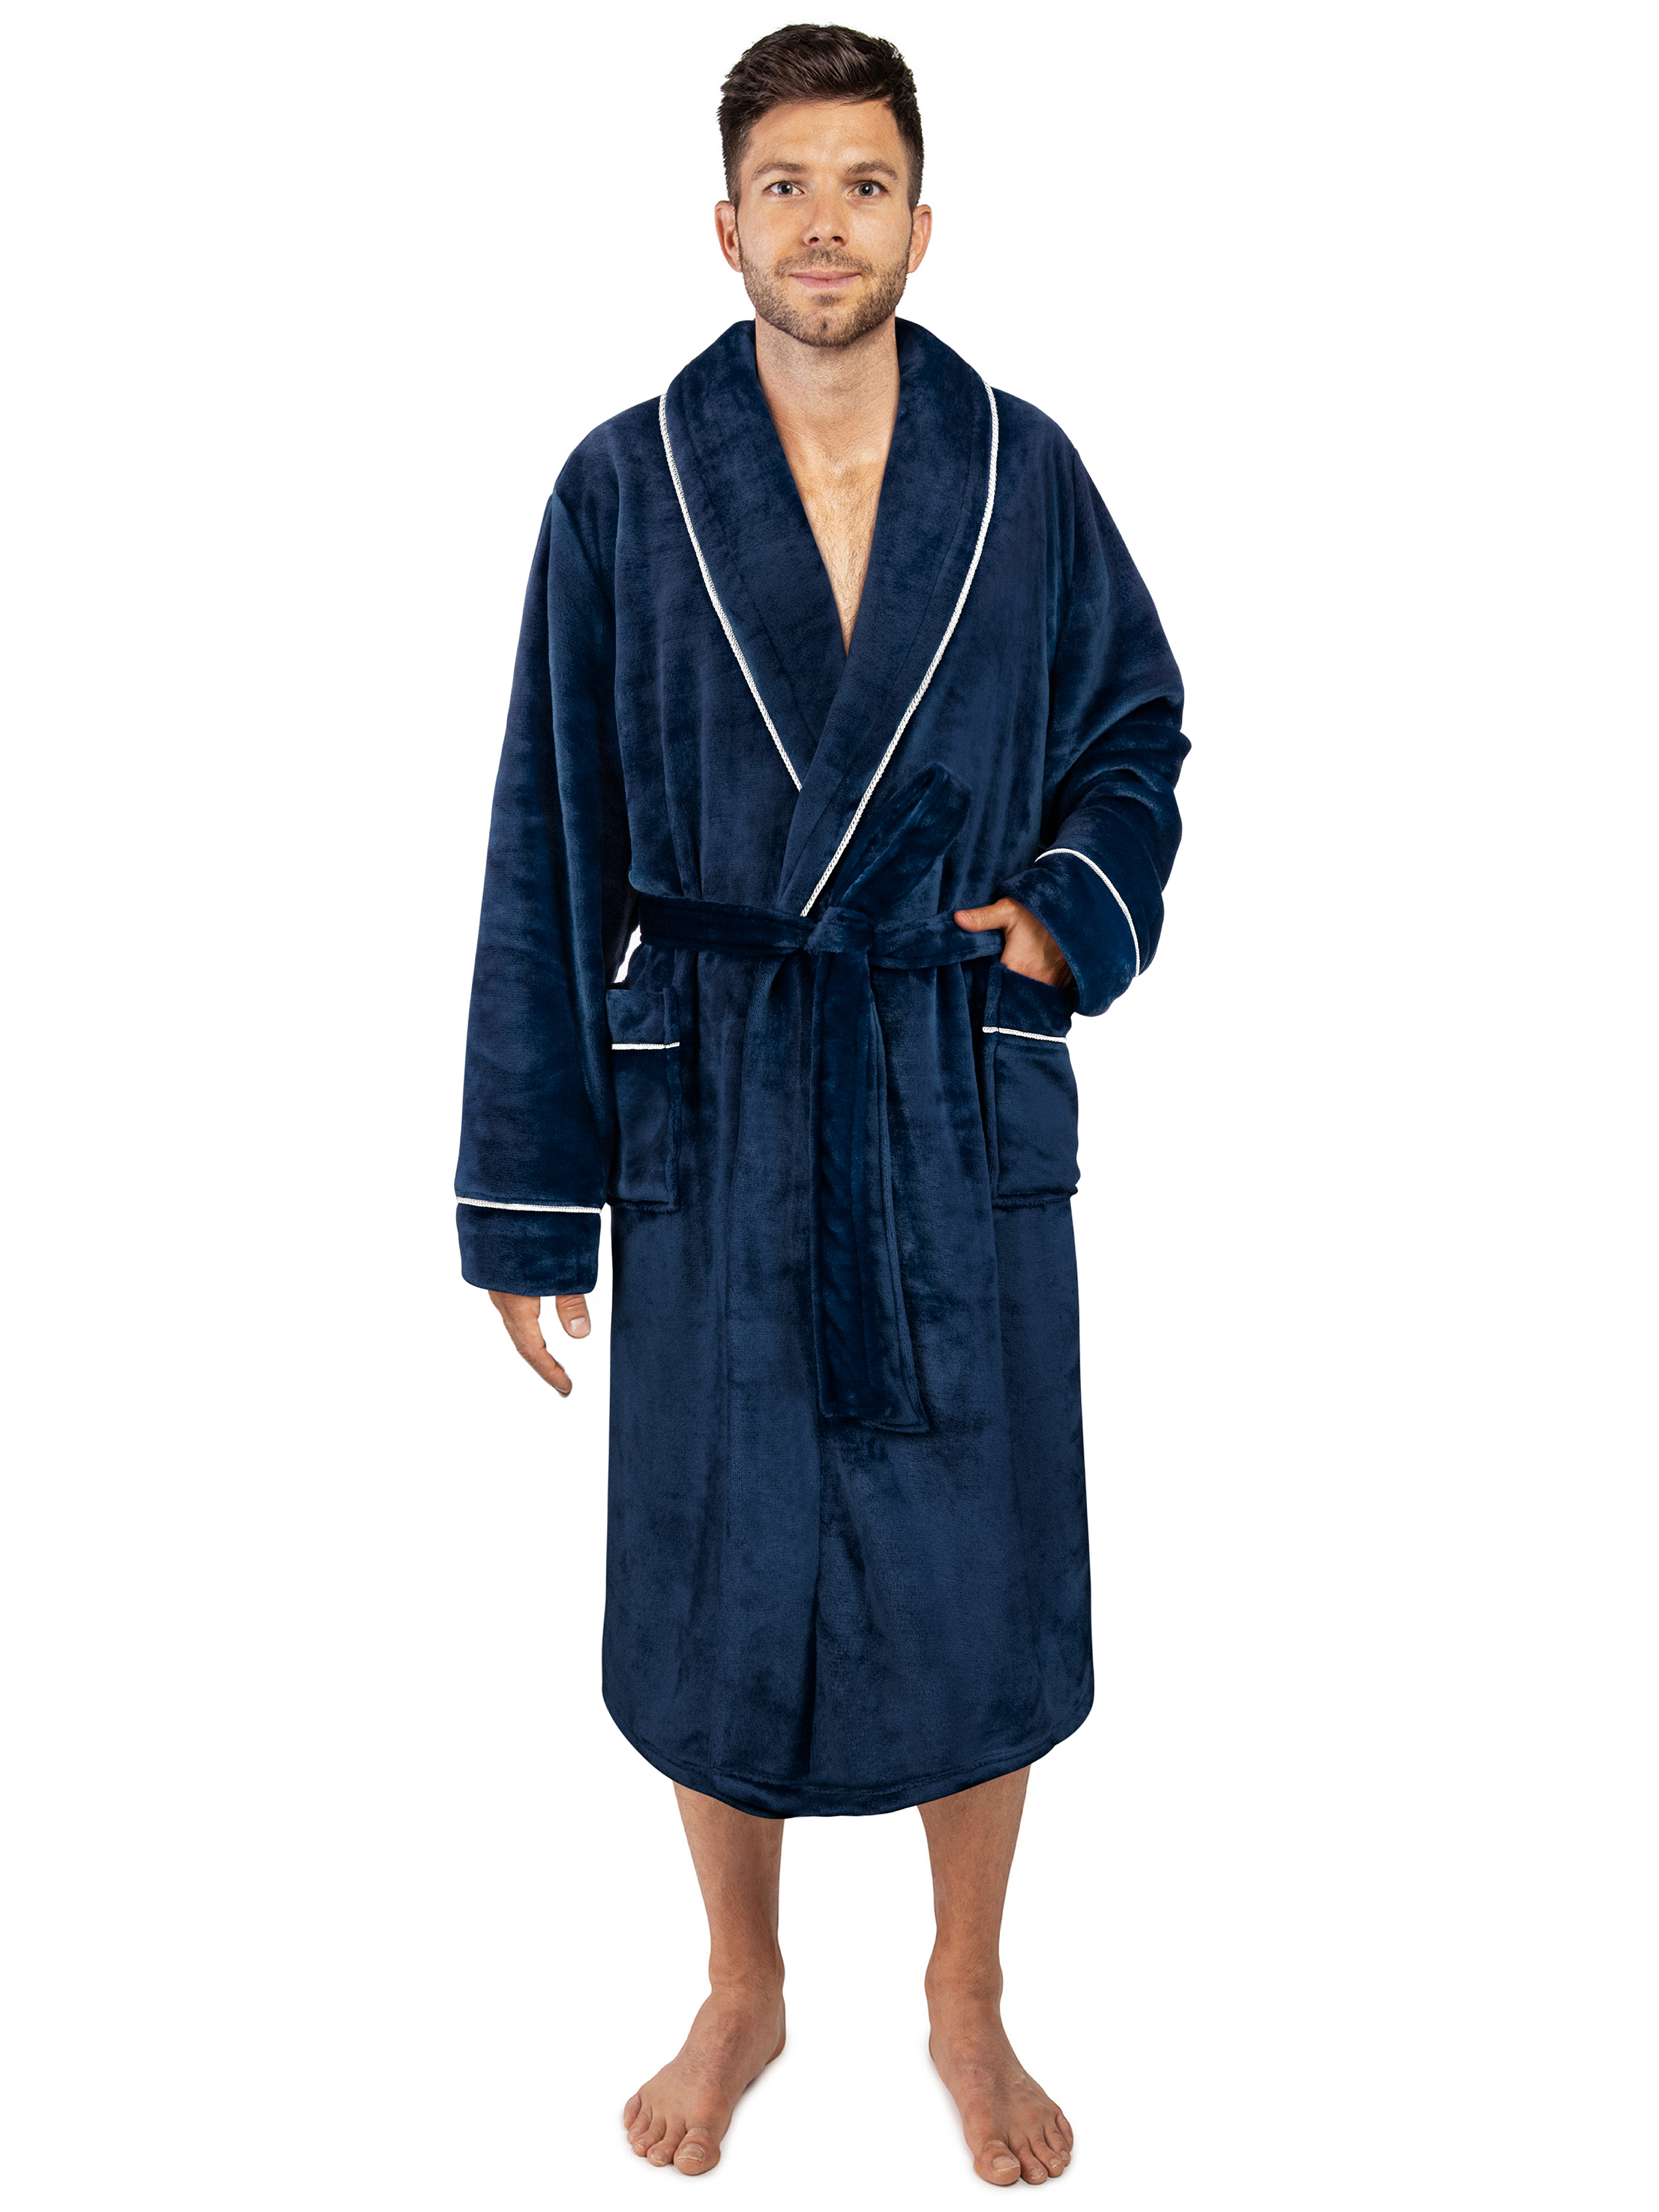 louis vuitton bathrobe men's